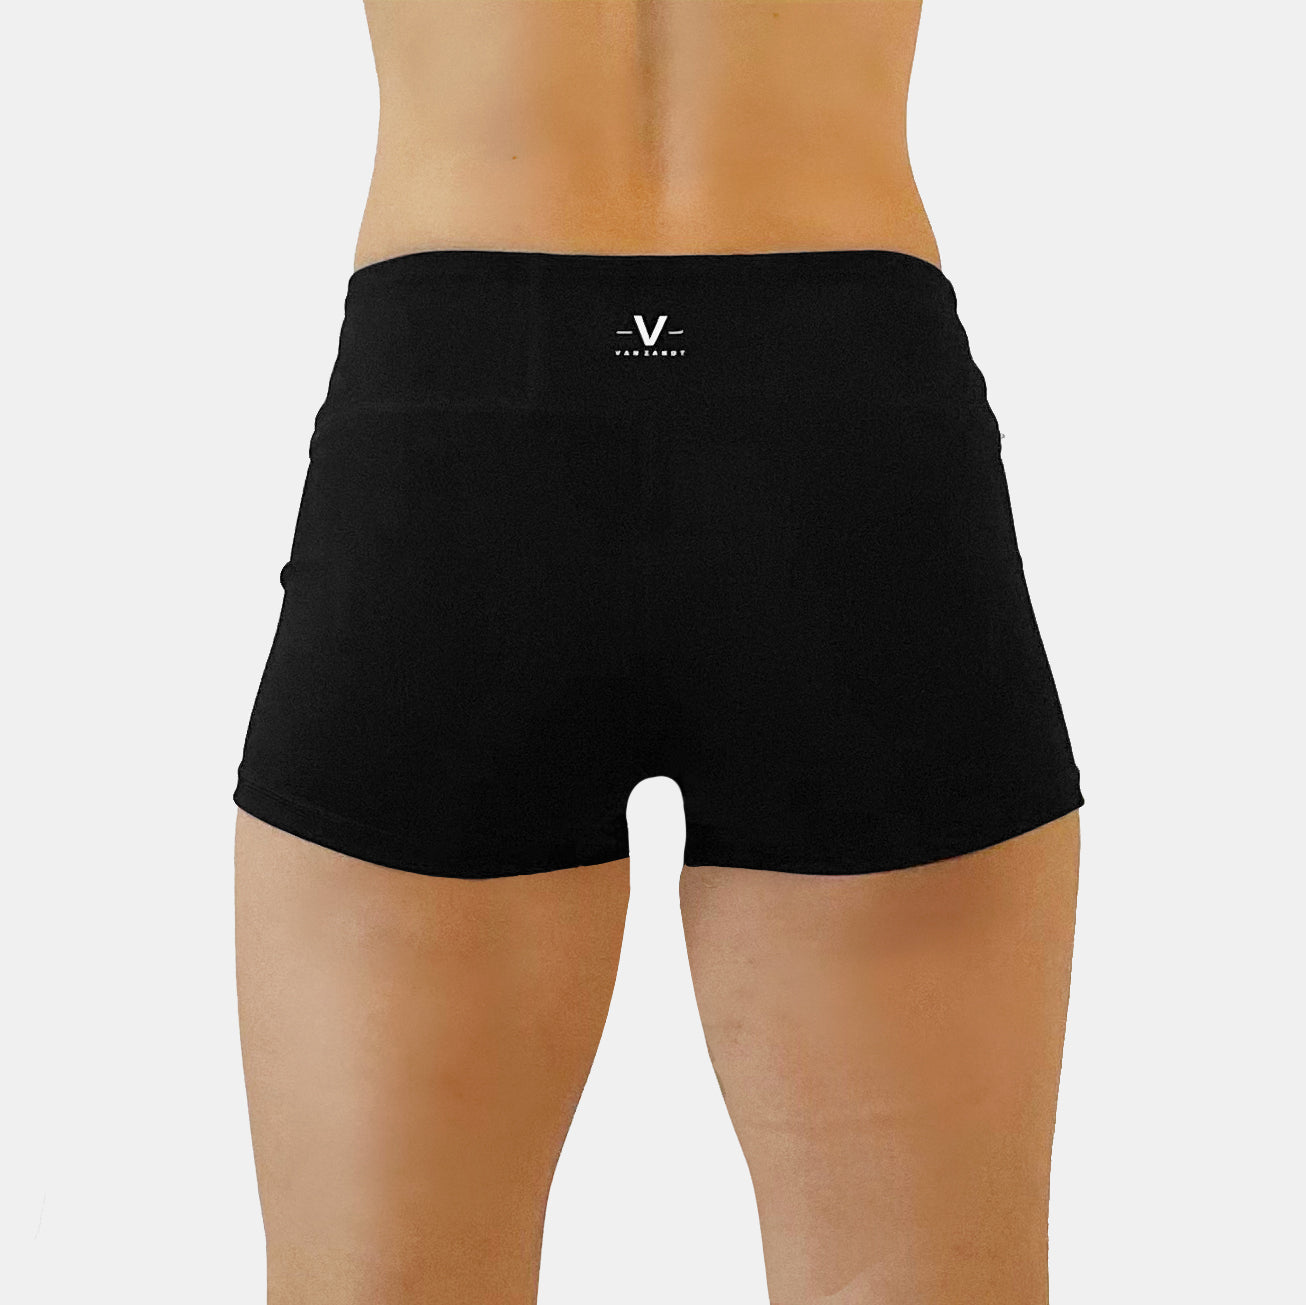 Vitality Compression Shorts Black - VAN ZANDT APPAREL